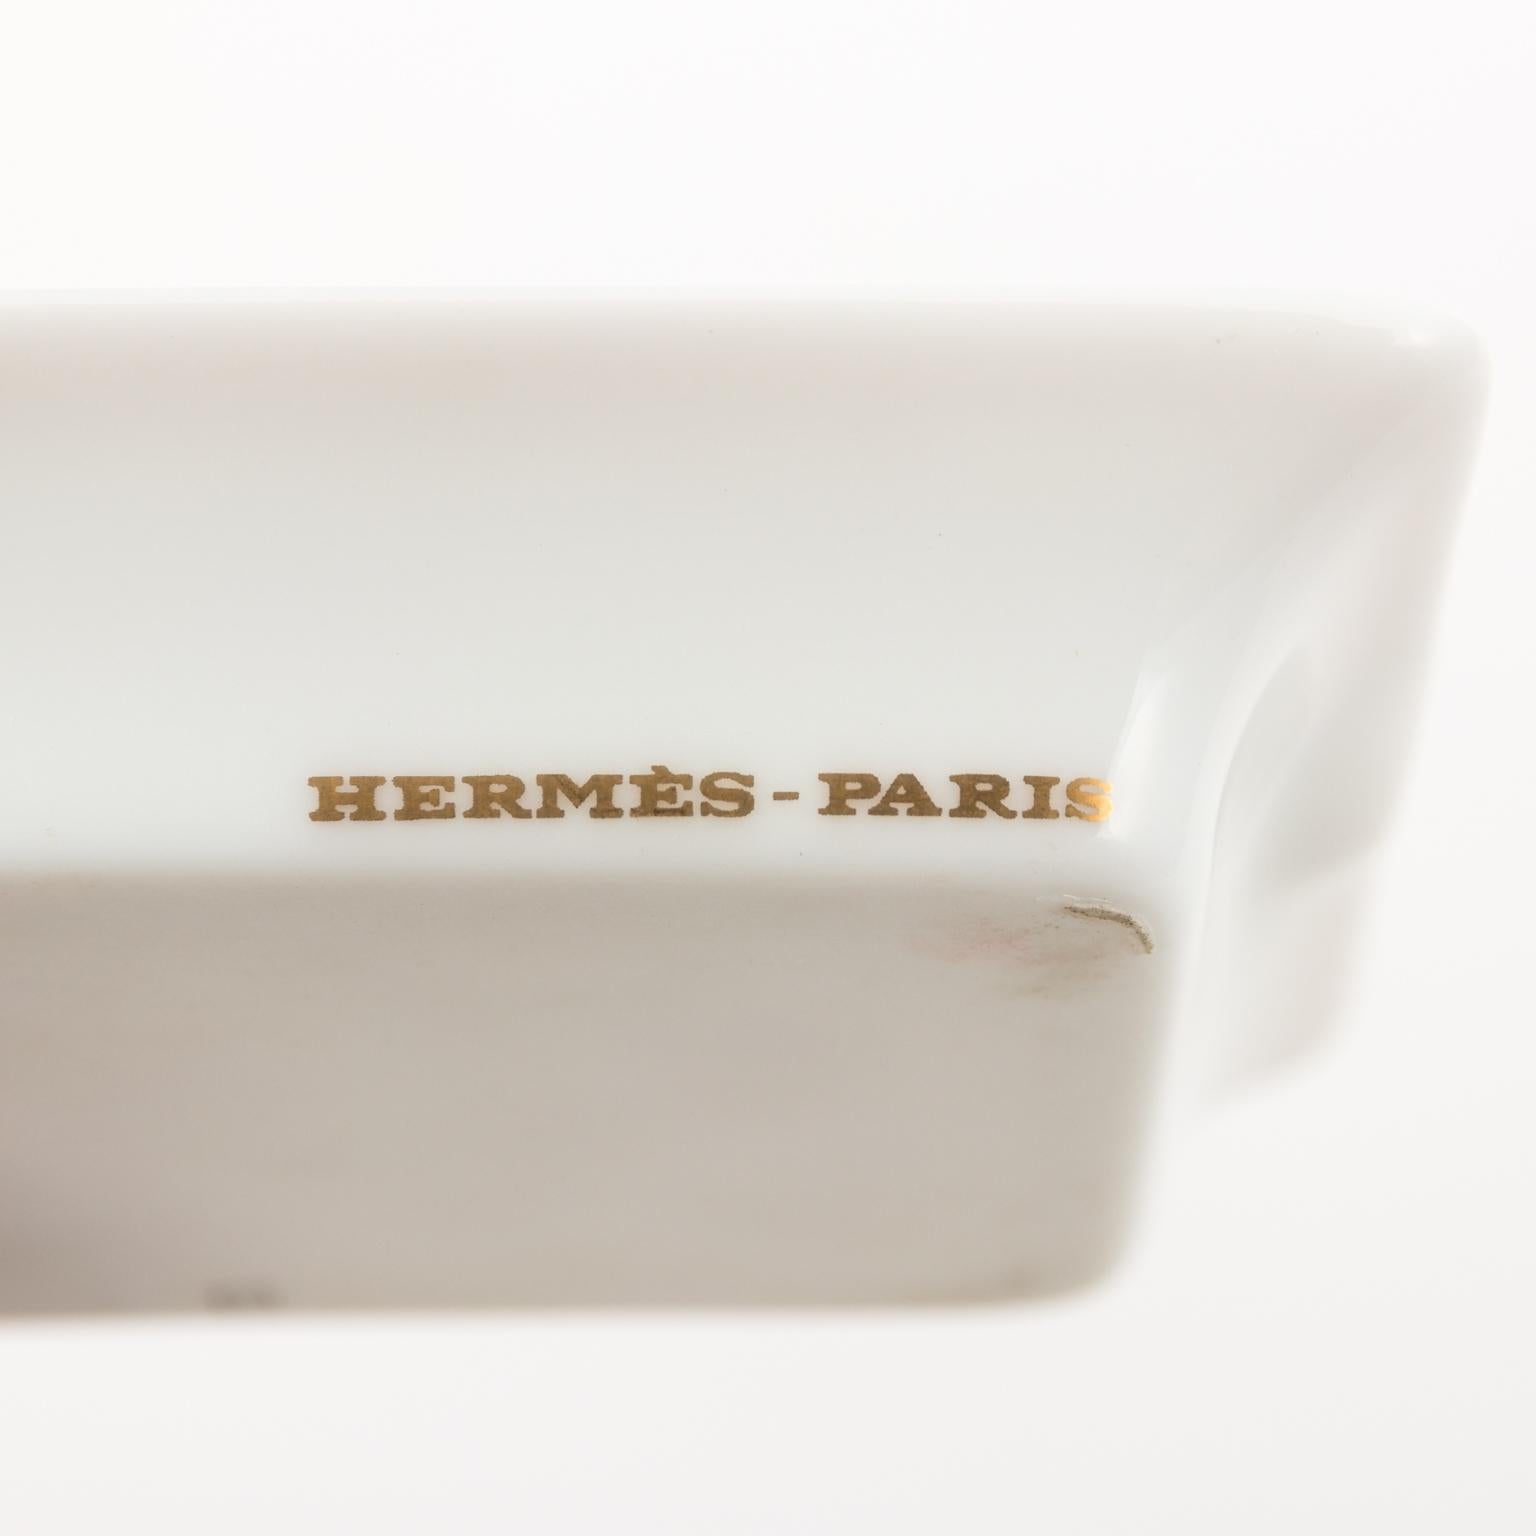 Hermès-Paris Jaguar Ash Trays 5